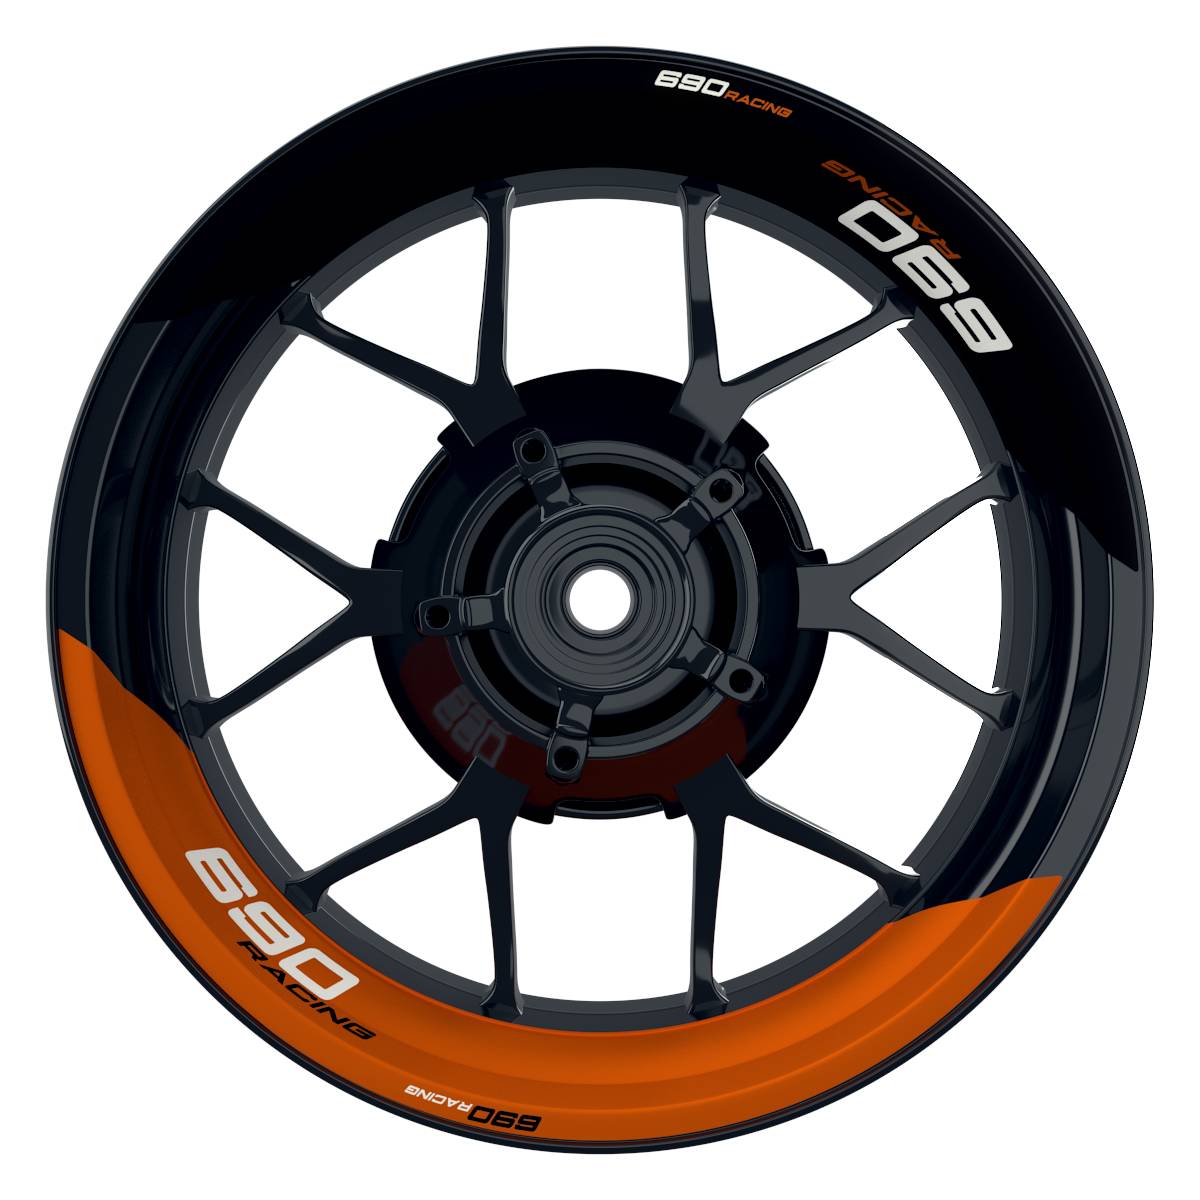 KTM Racing 690 halb halb schwarz orange Frontansicht